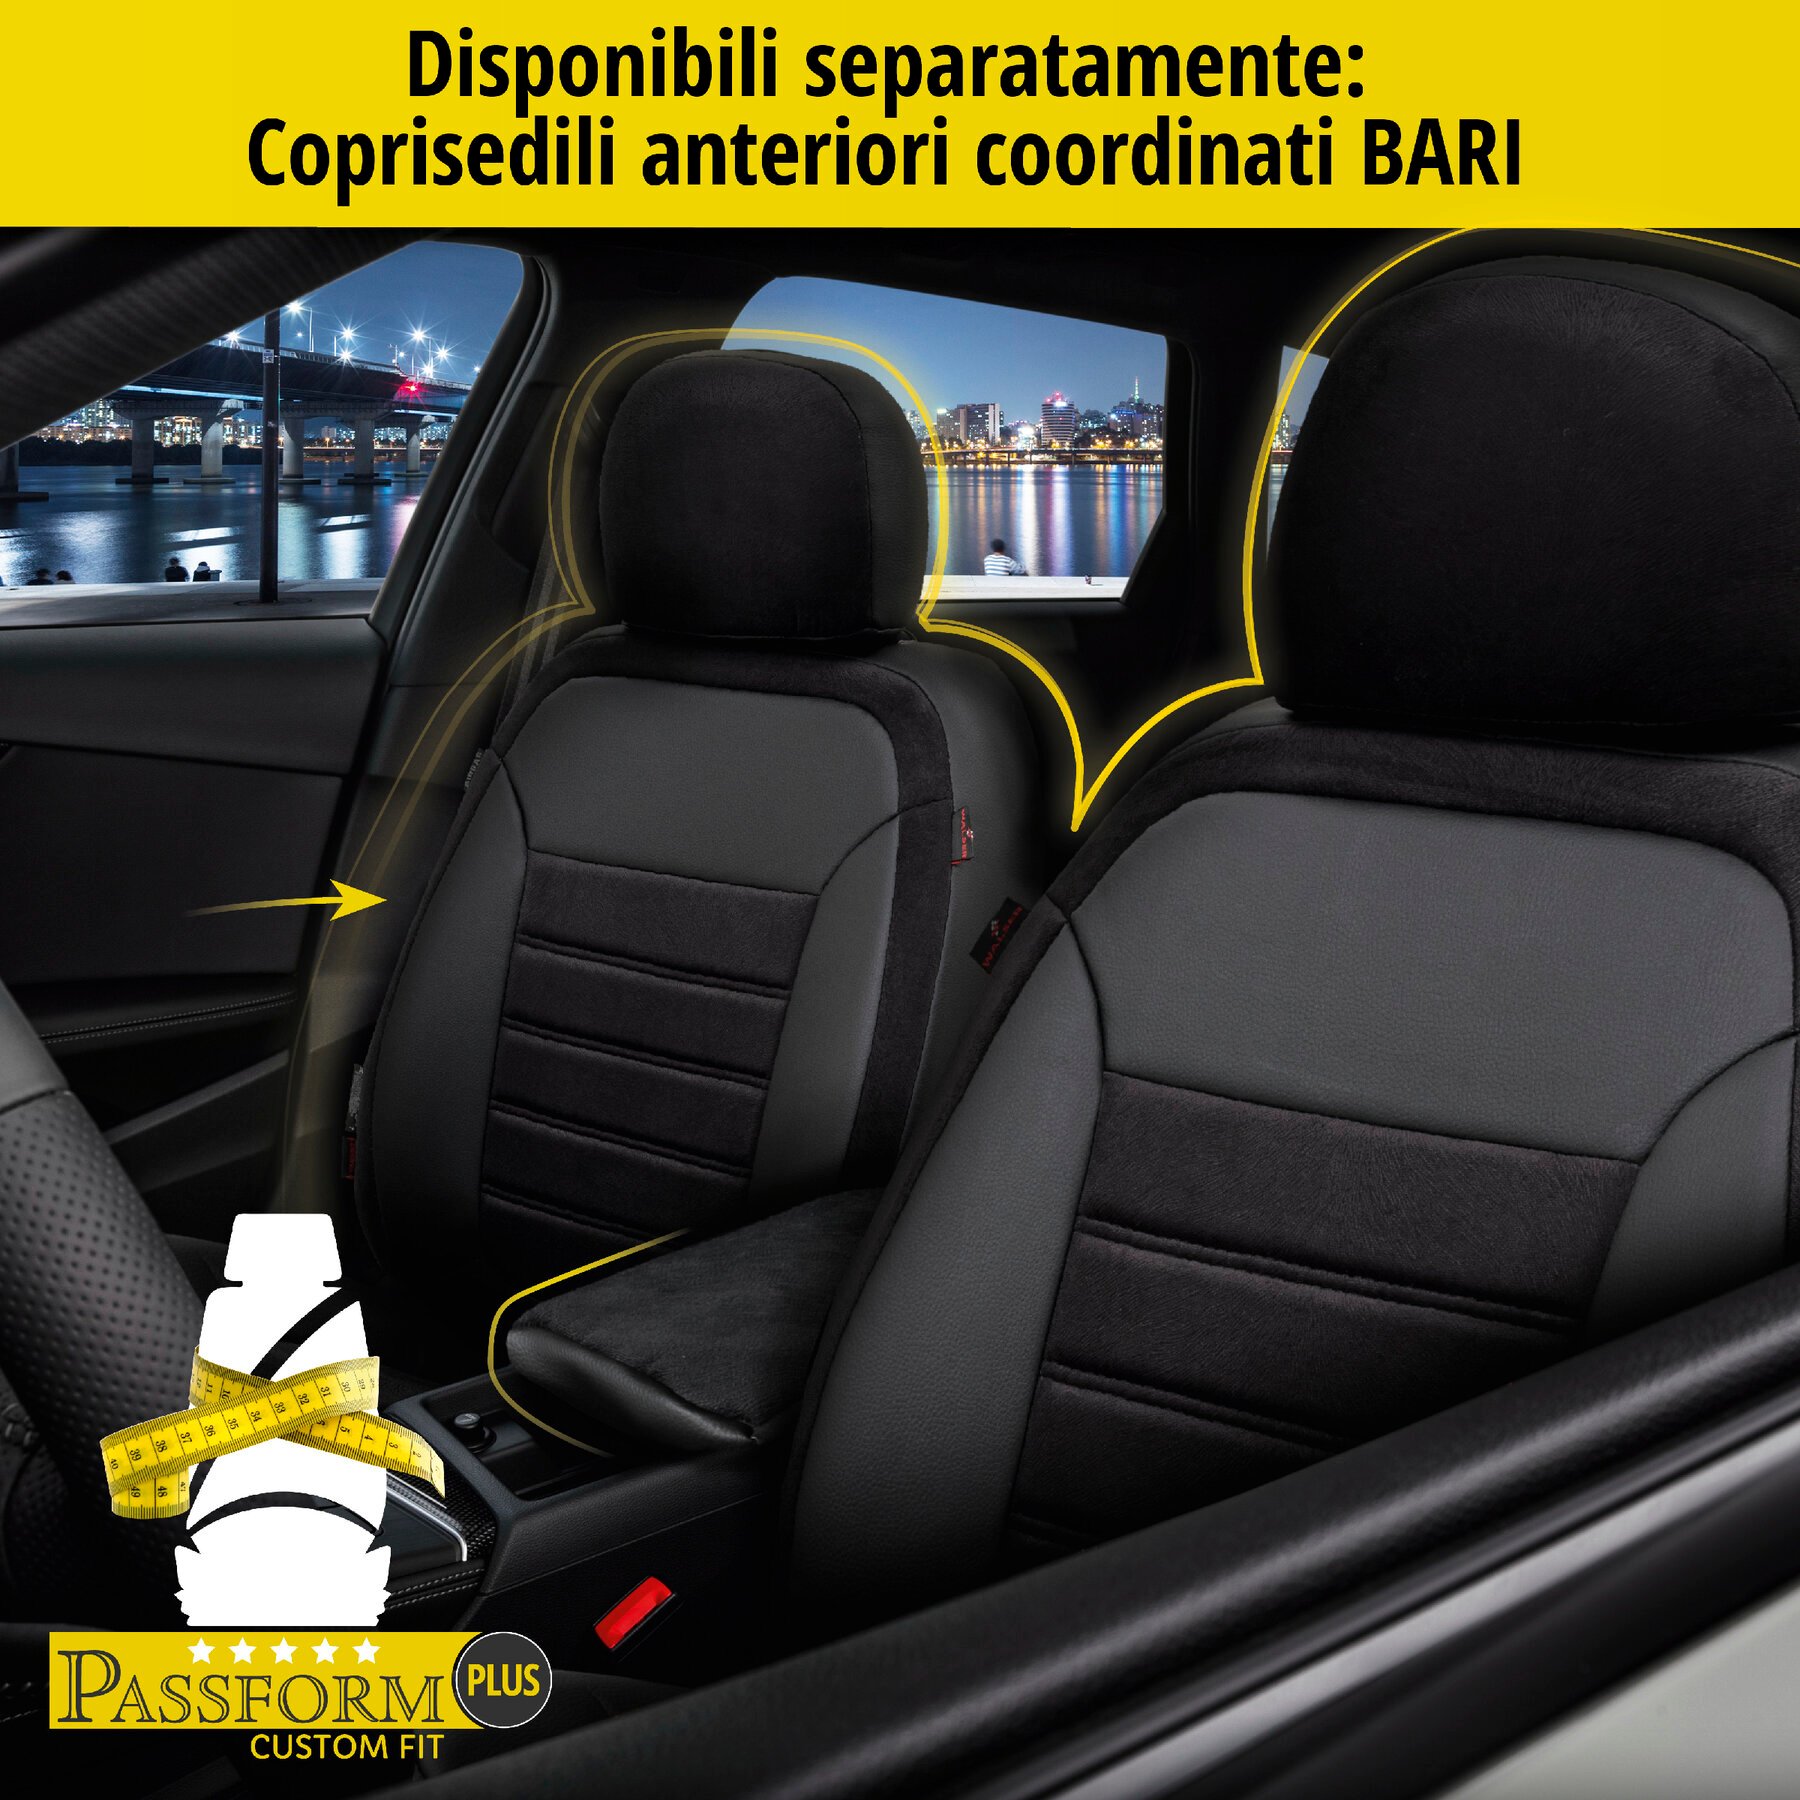 Coprisedili Bari per Skoda Rapid 07/2012 - 12/2019, 1 coprisedili posteriore per sedili normali